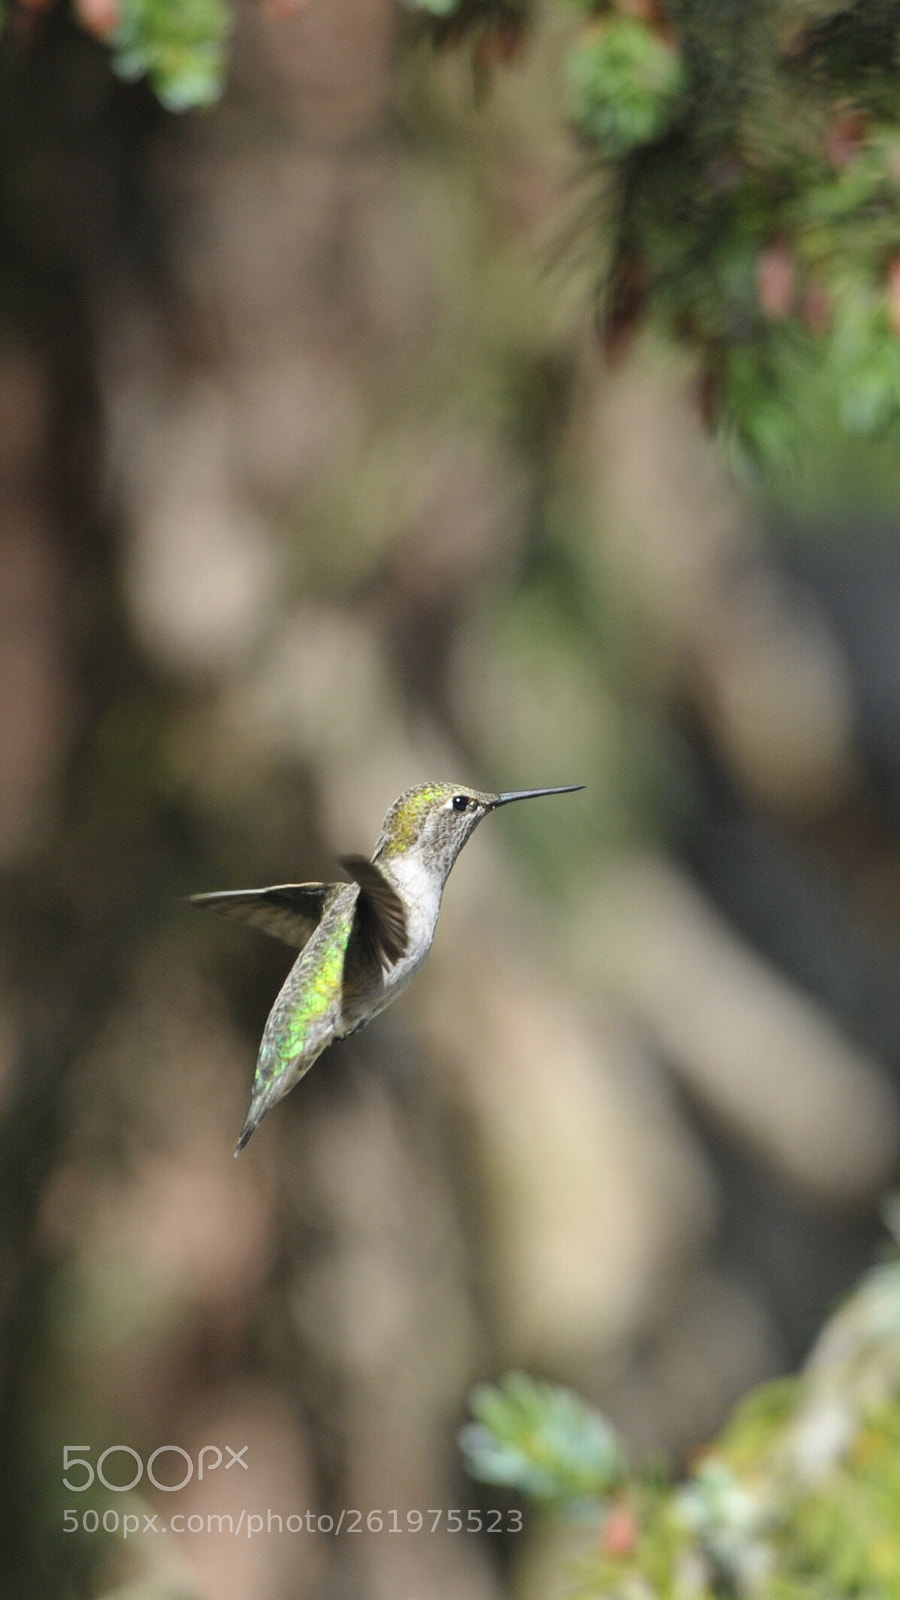 Nikon D700 sample photo. A hummingbird photography